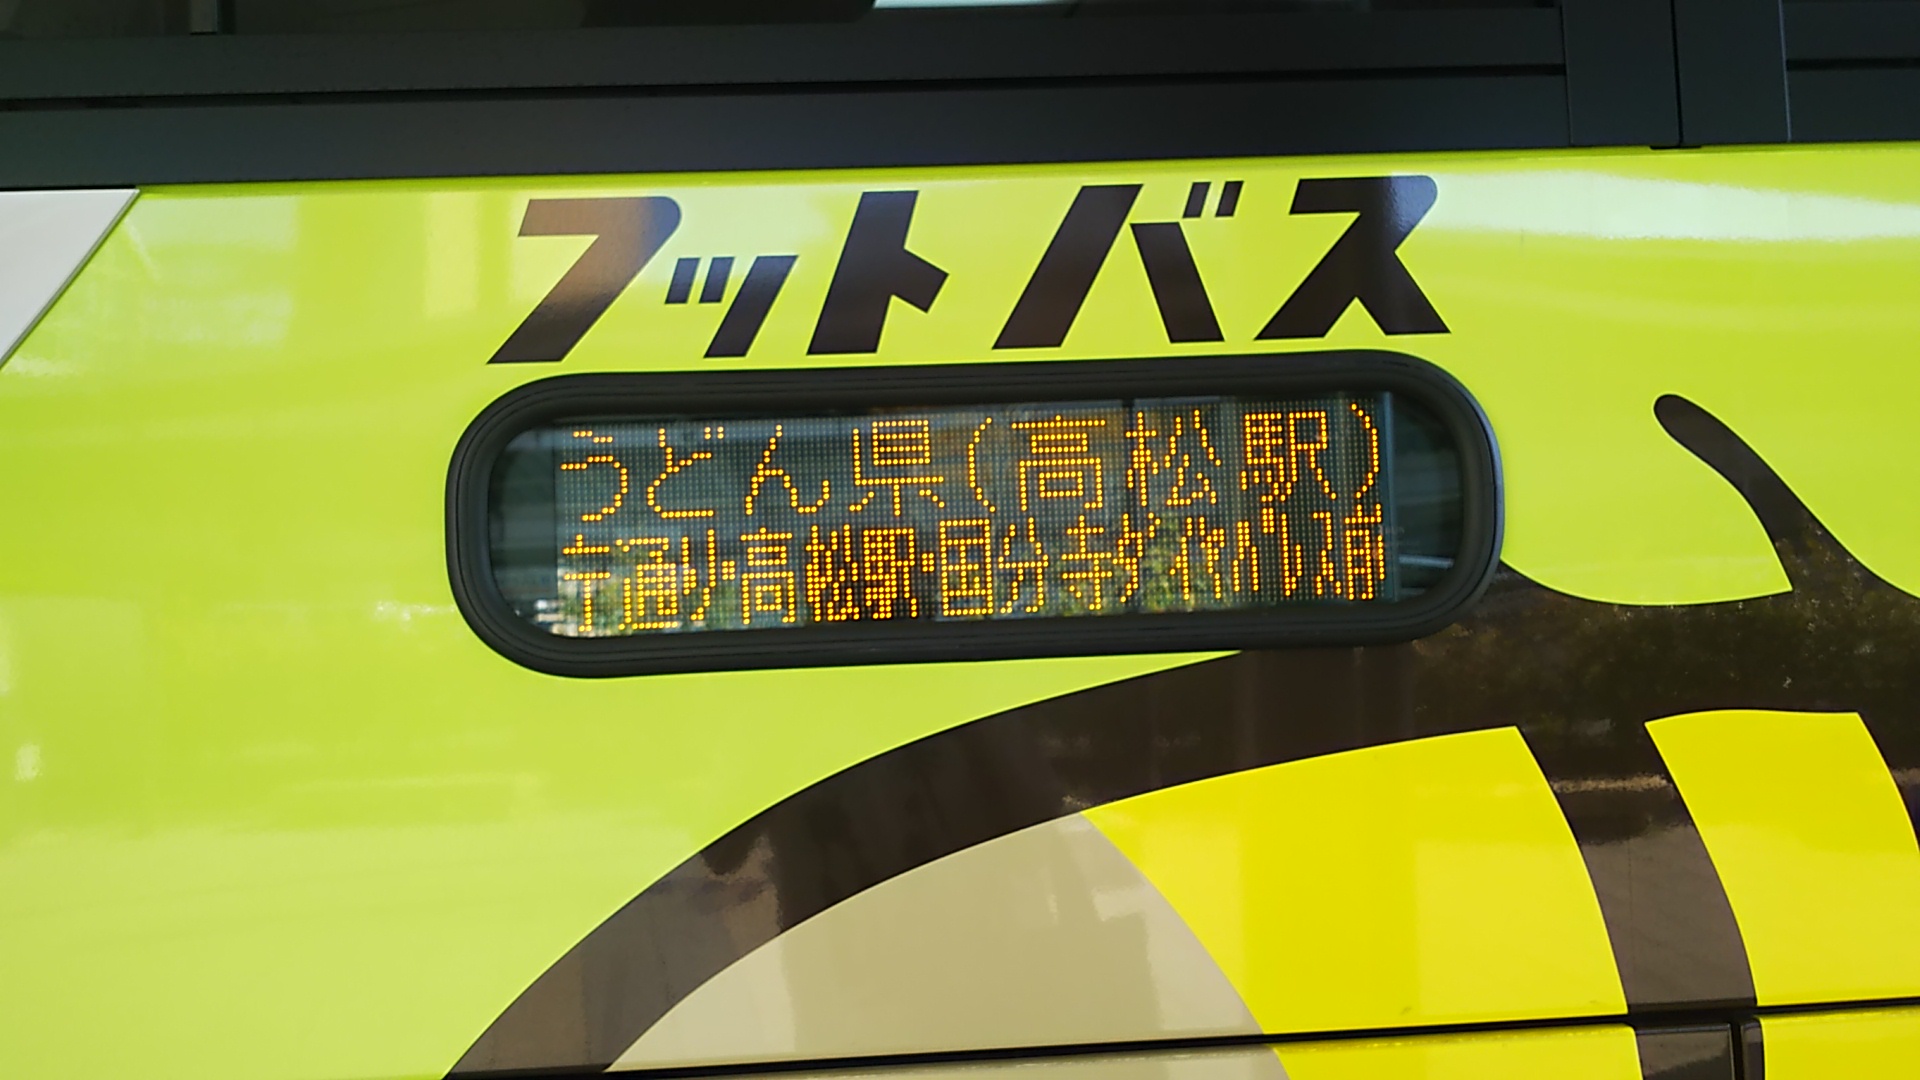 バスに「うどん県」表記を見て、ネタではなく実際にうどん県を自称していることを目の当たりにする